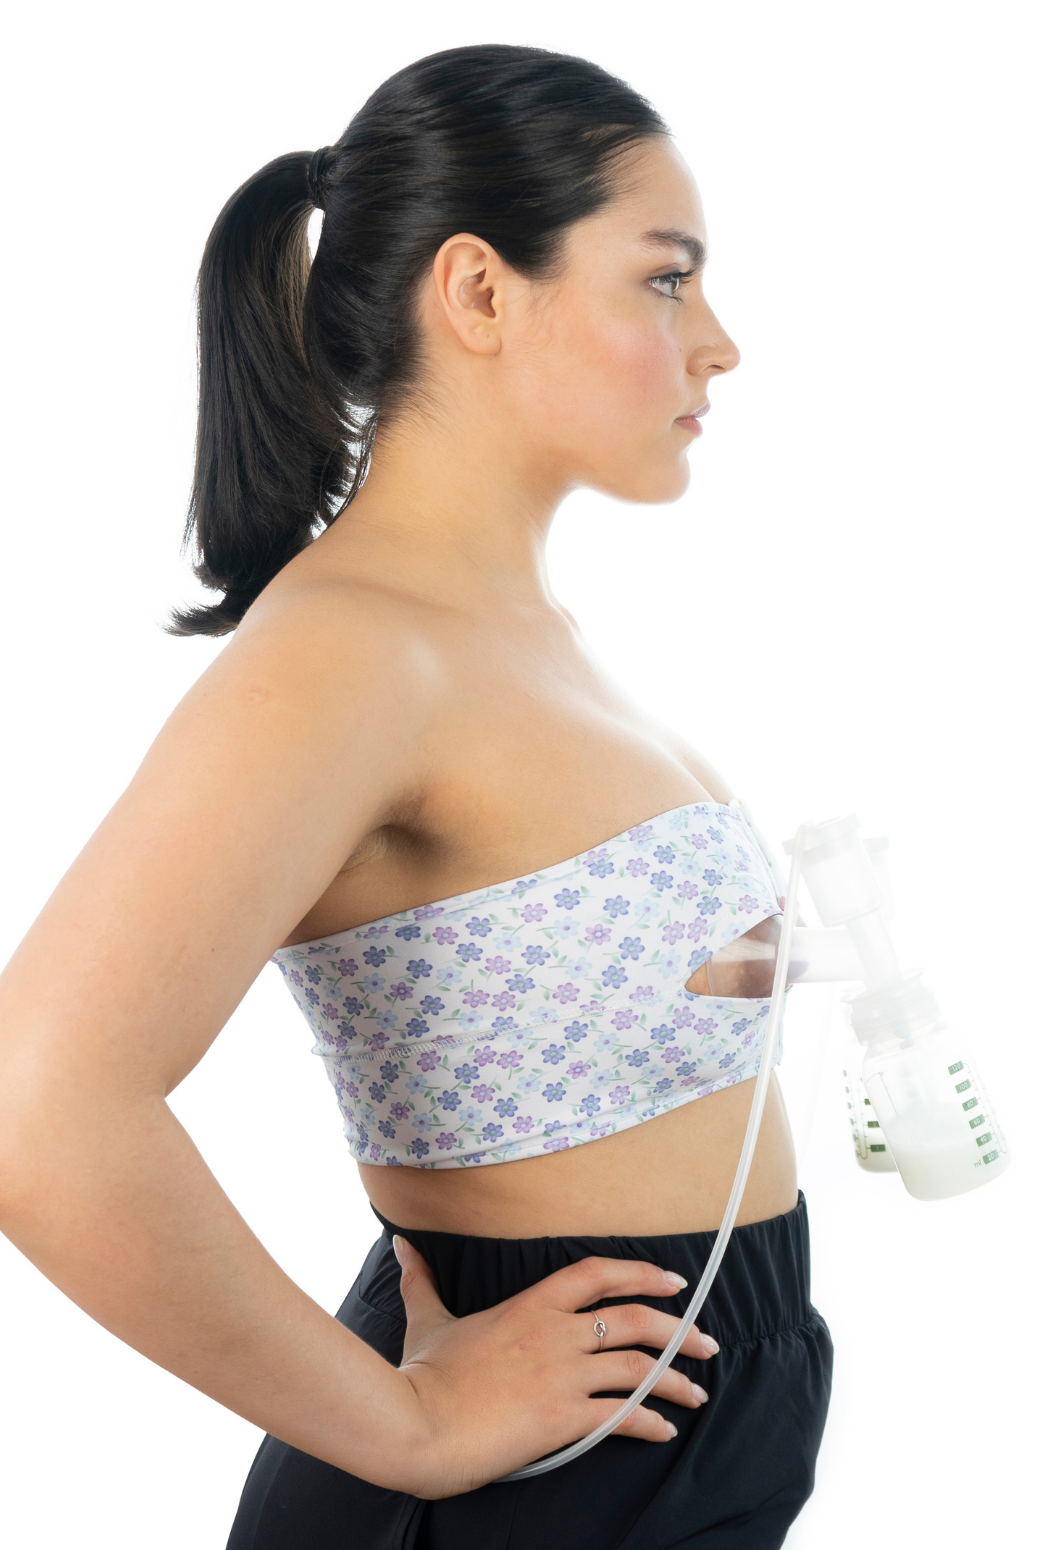 PumpEase® hands-free pumping bra * pump breastmilk hands free